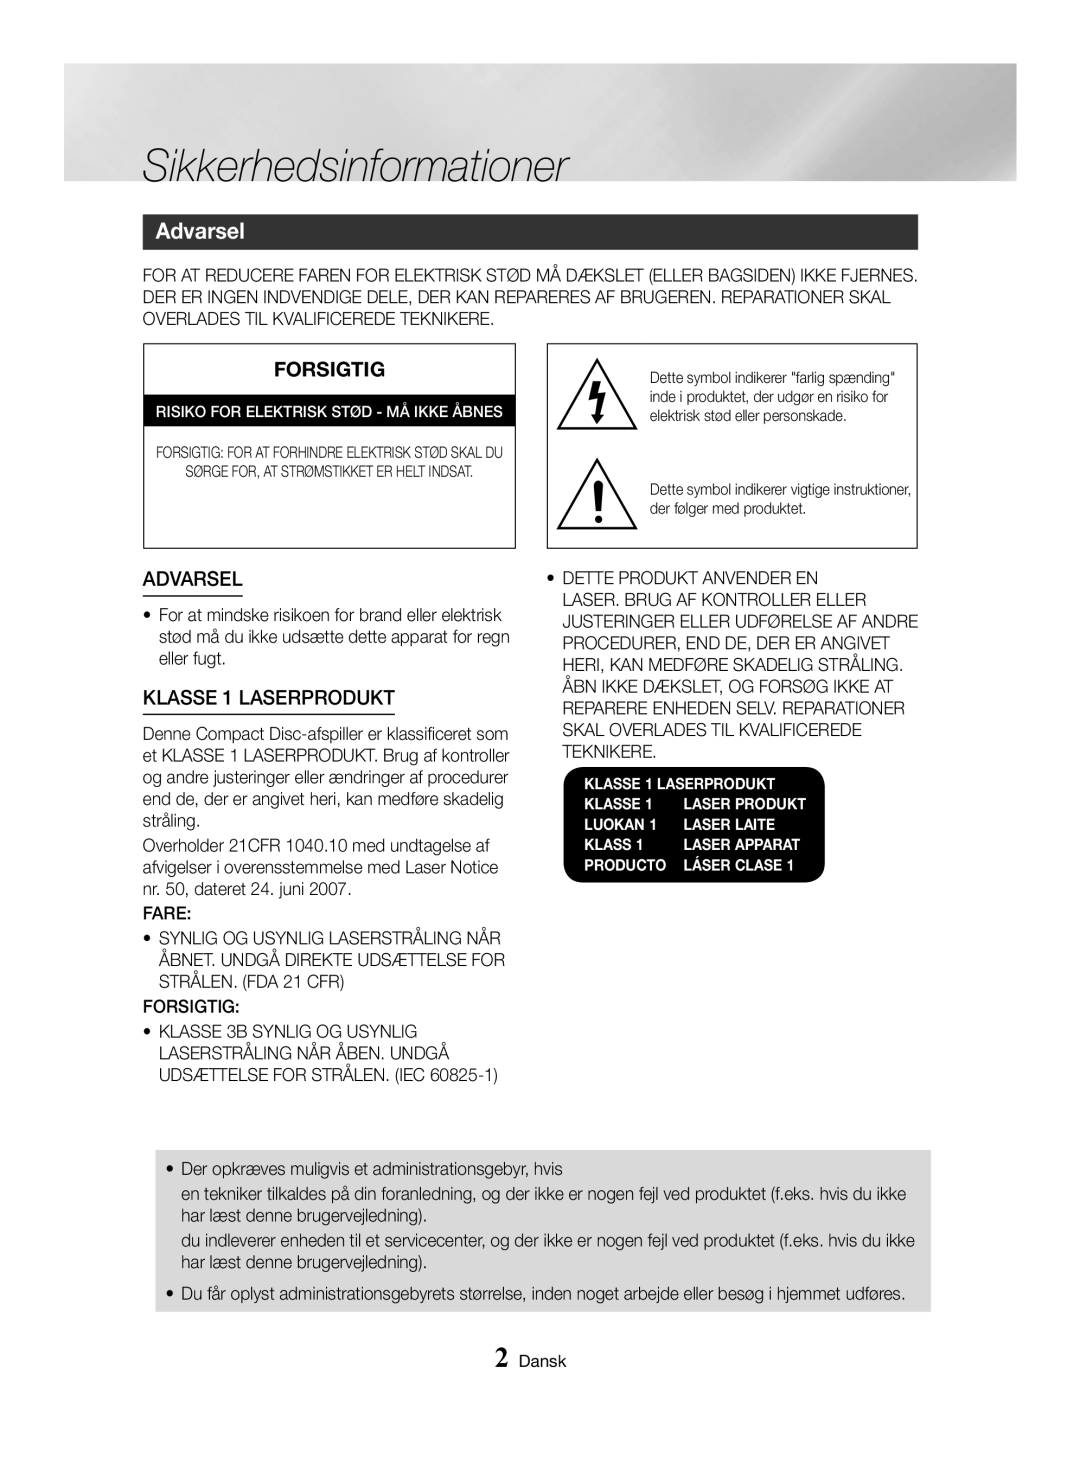 Samsung MX-HS8000/EN, MX-HS8000/ZF manual Sikkerhedsinformationer, Advarsel, Forsigtig, KLASSE 1 LASERPRODUKT 